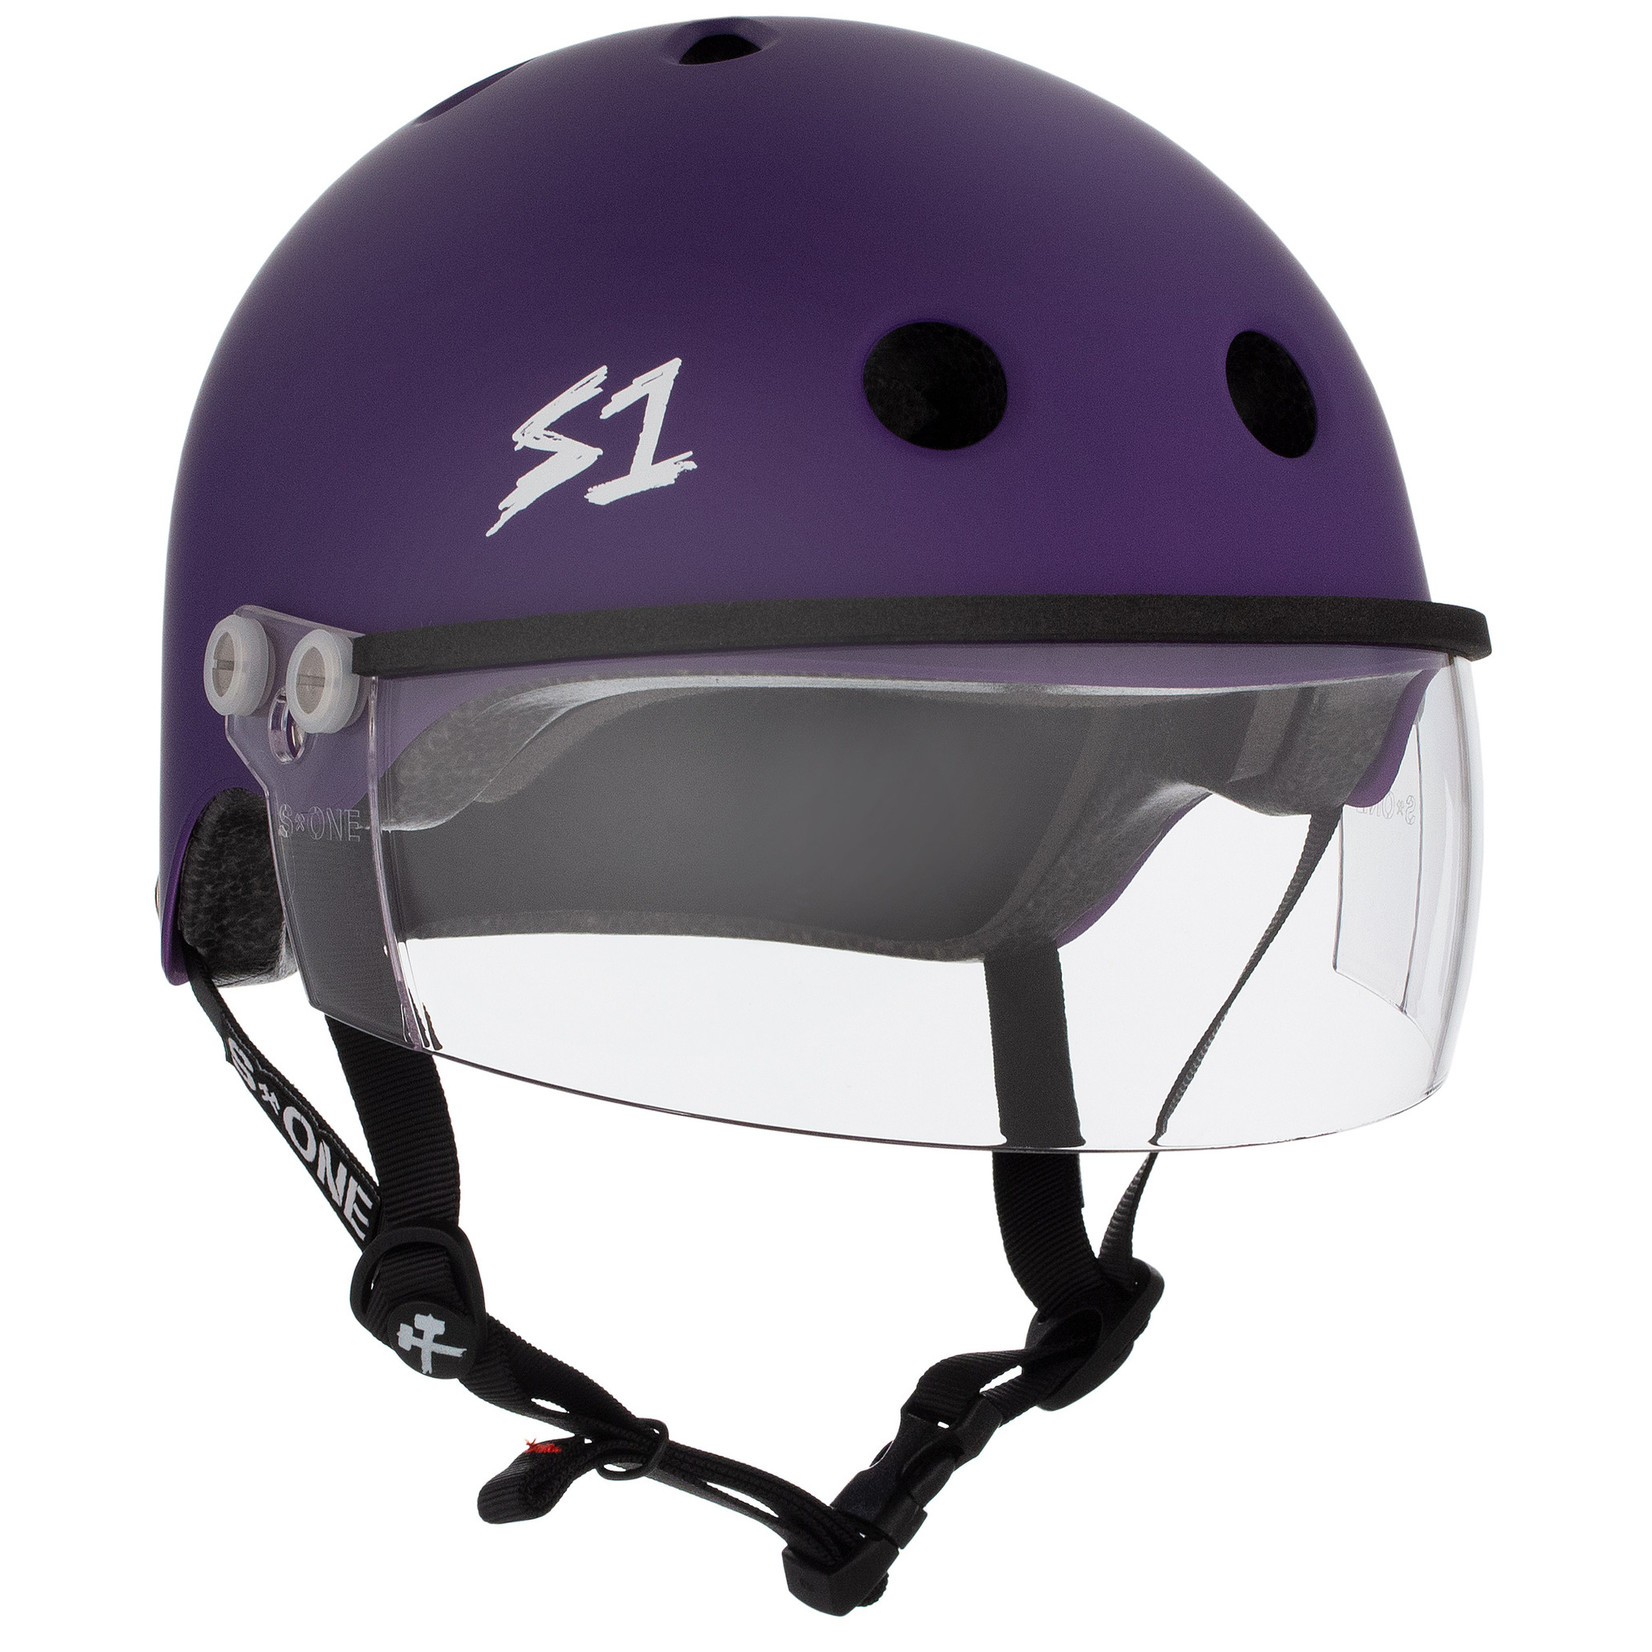 S1 S1 Lifer helmet Visor